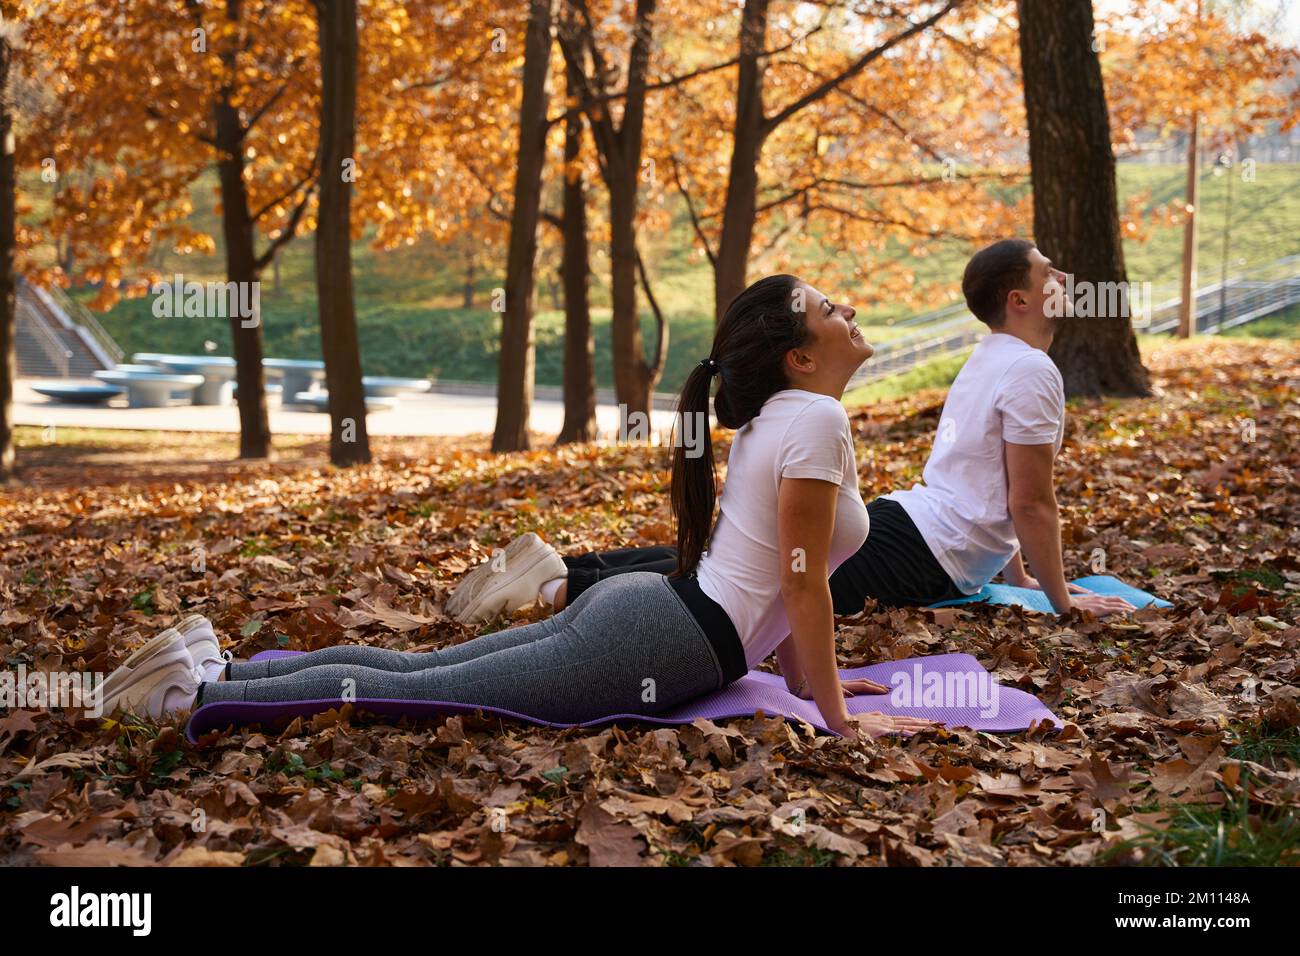 Una studentessa snella e la sua amica stanno facendo yoga sui karimat Foto Stock